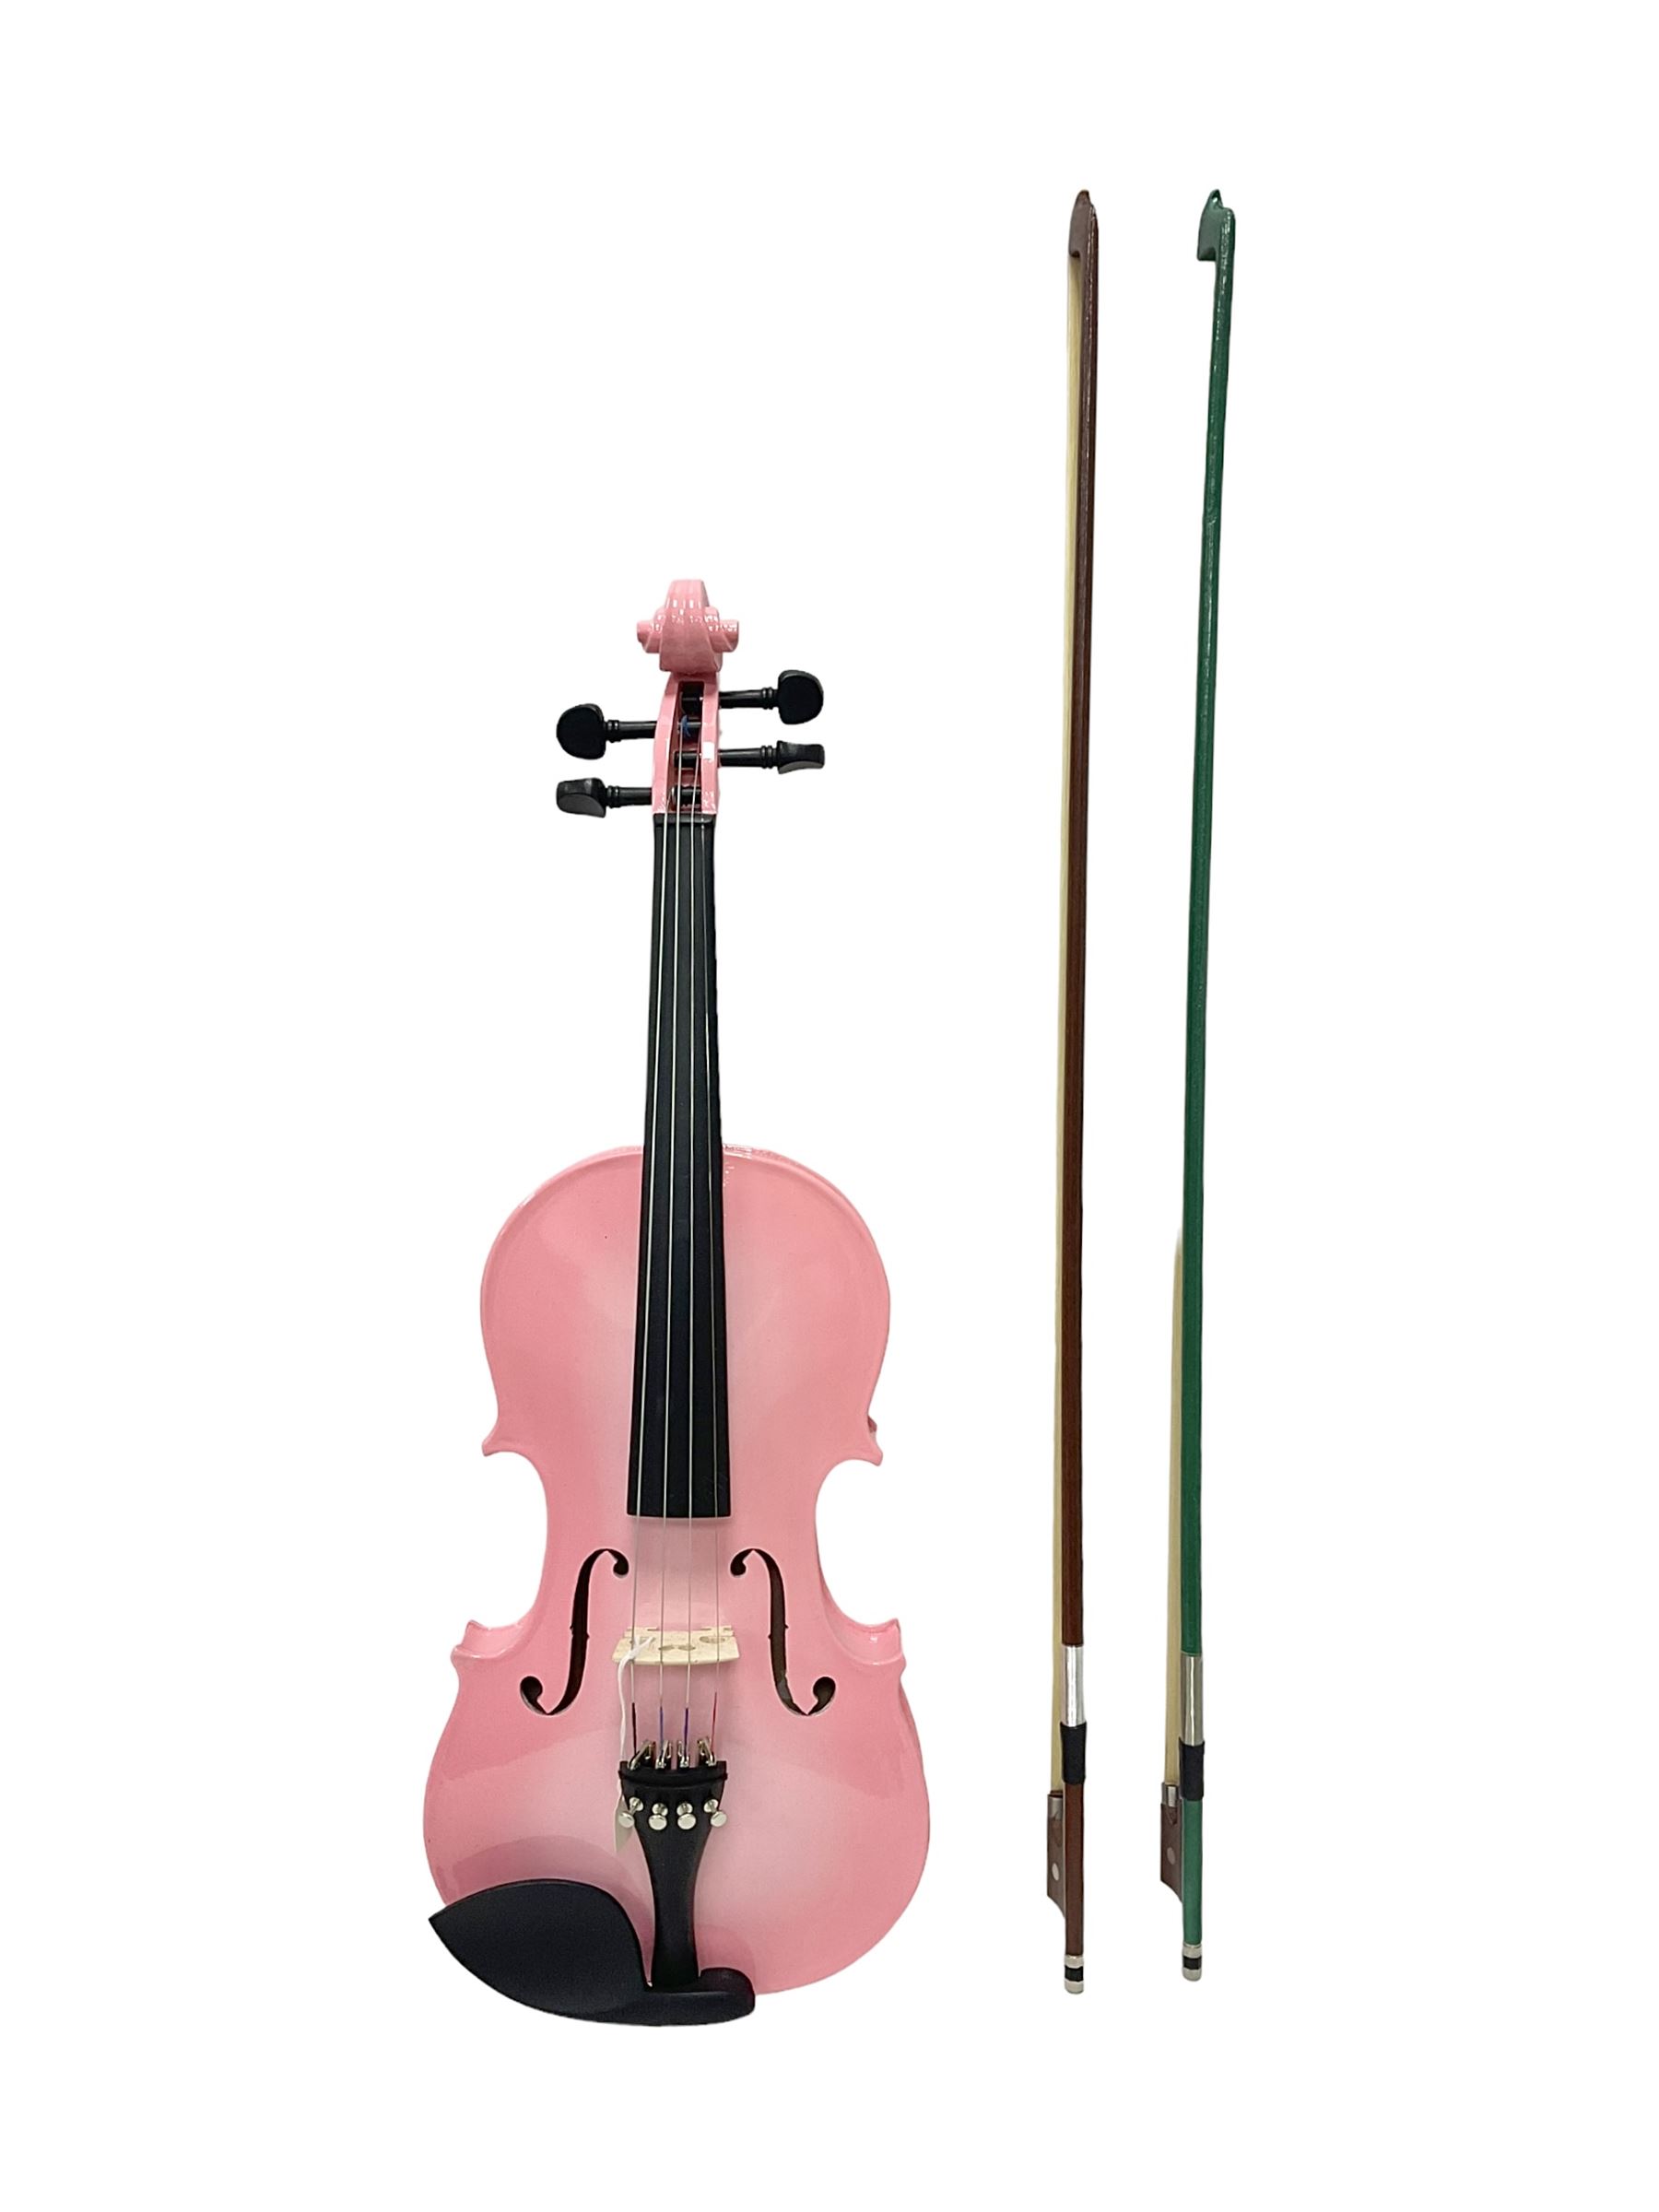 Zest full size pink violin